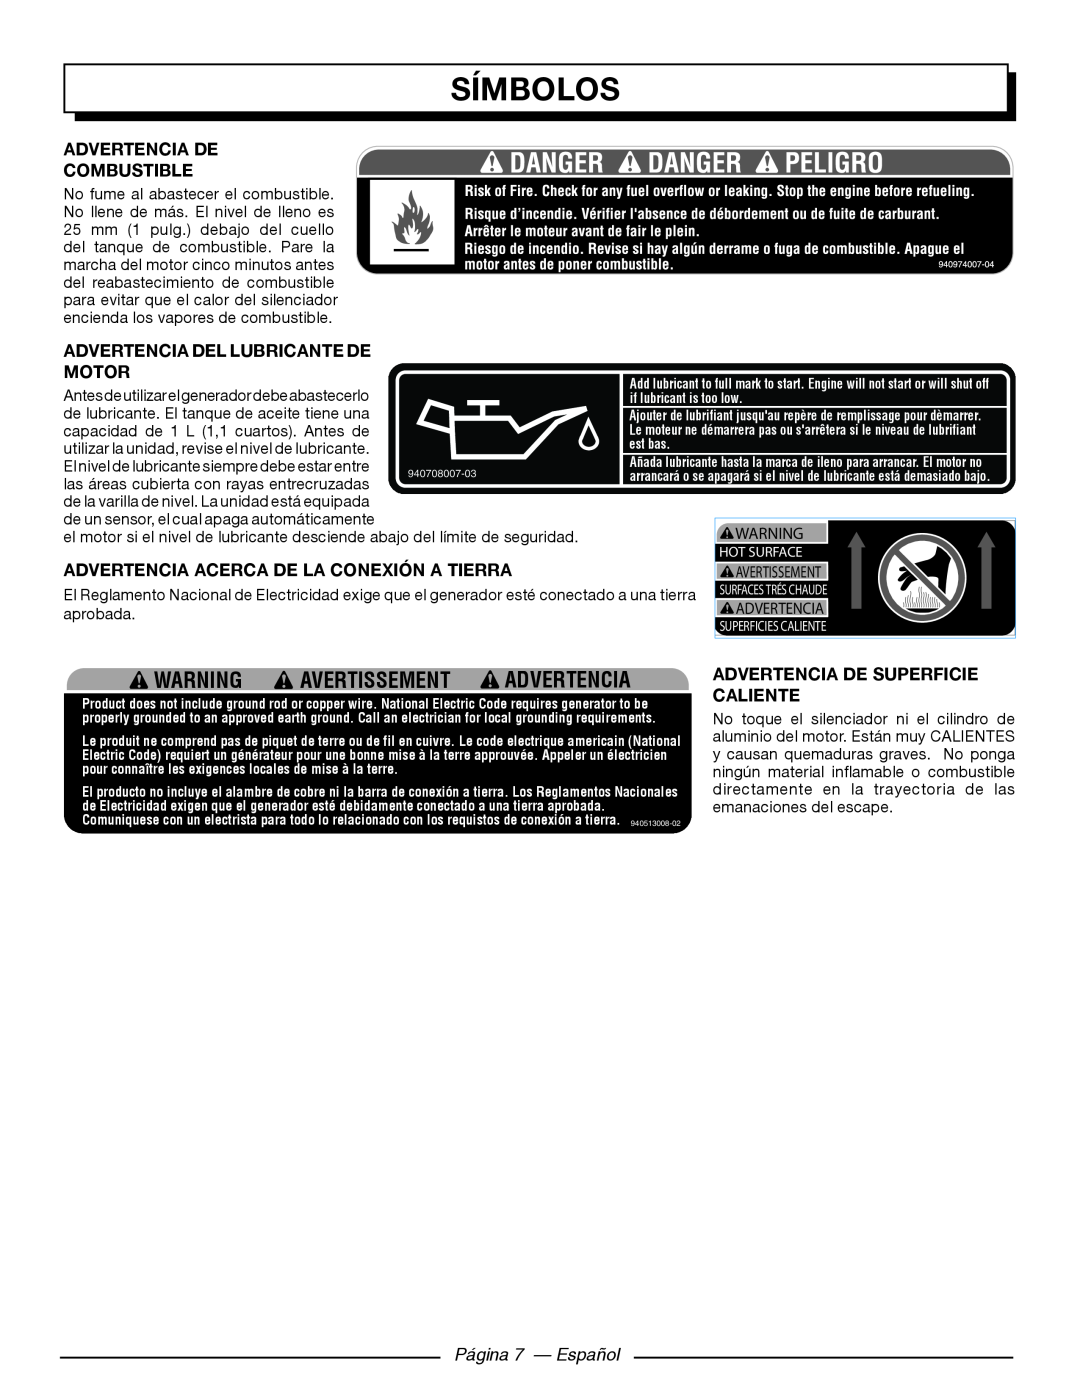 Homelite HGCA5700 símbolos, Página 7 — Español, Warning Avertissement Advertencia, if lubricant is too low, est bas 